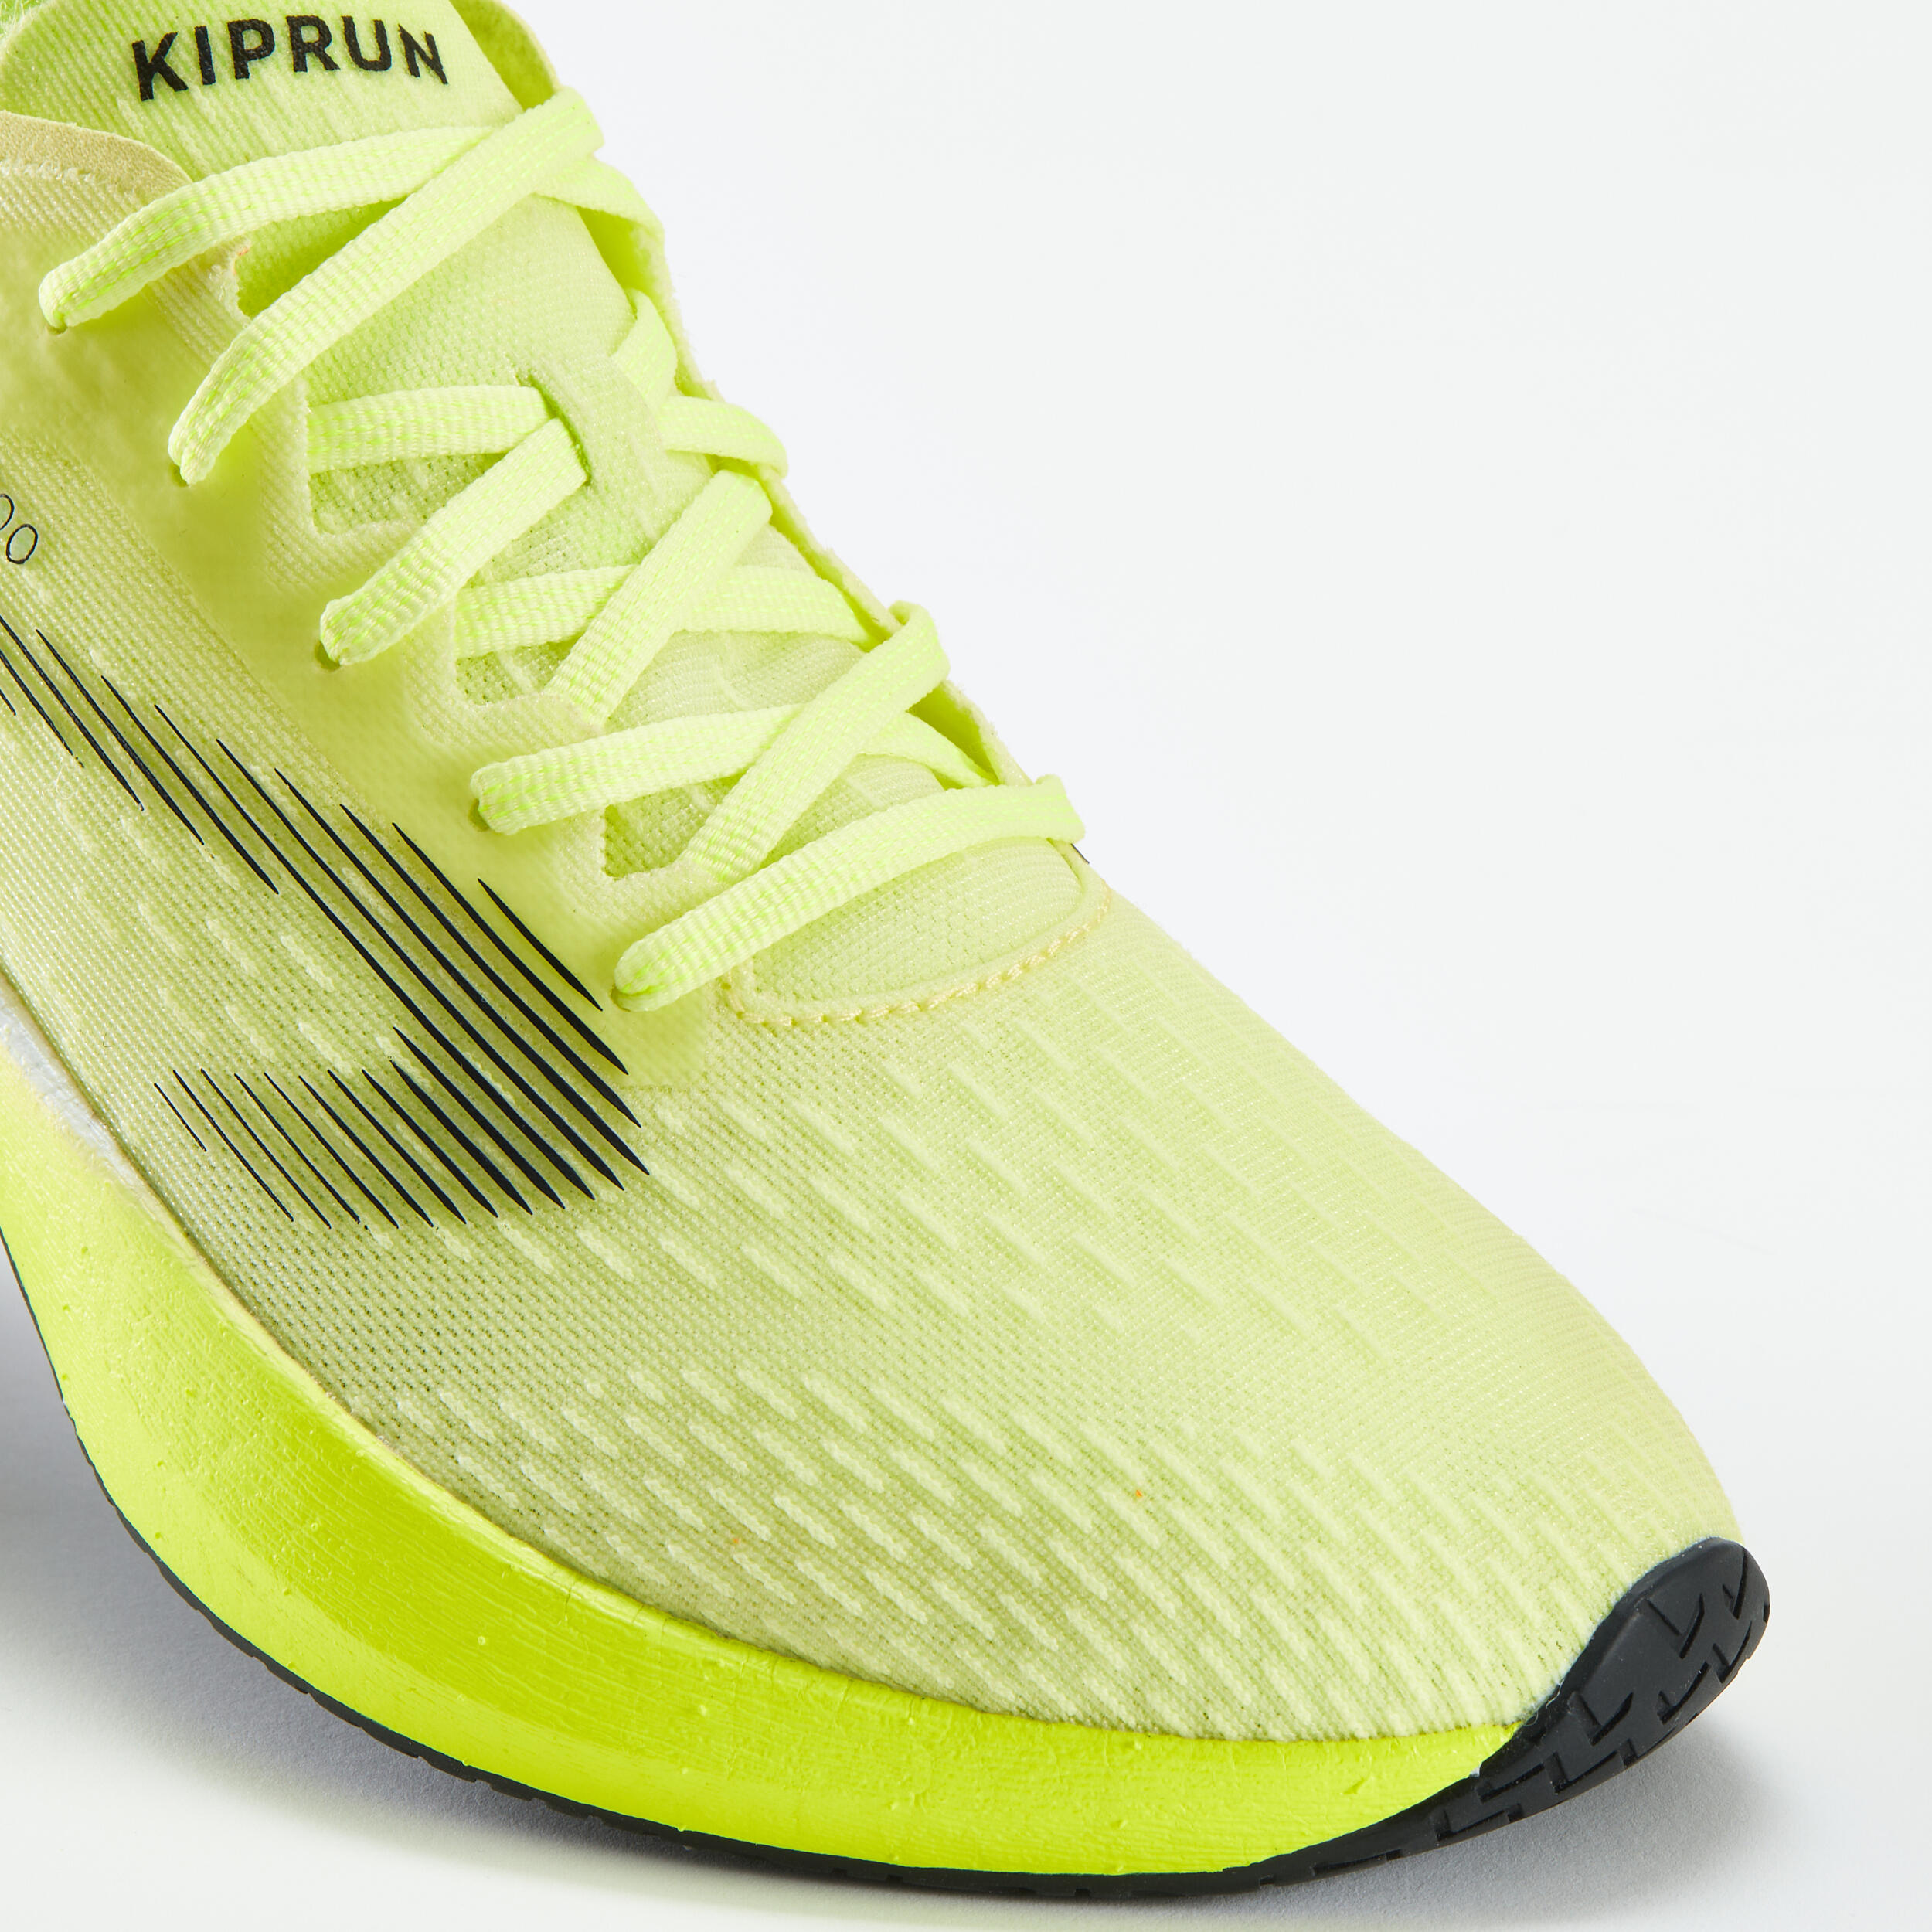  KIPRUN KD900 Men's Running Shoes -Yellow 5/9